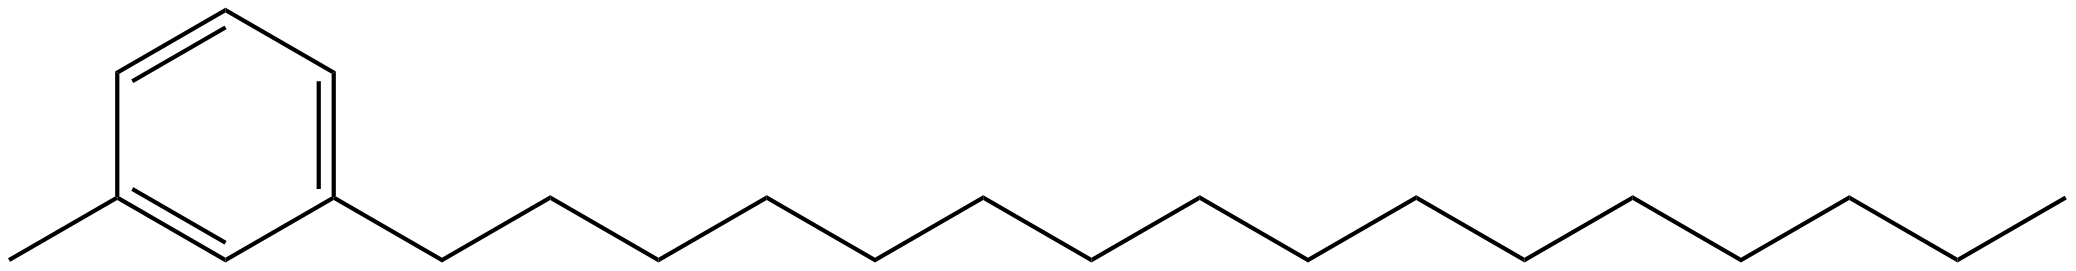 Image of 1-hexadecyl-3-methylbenzene